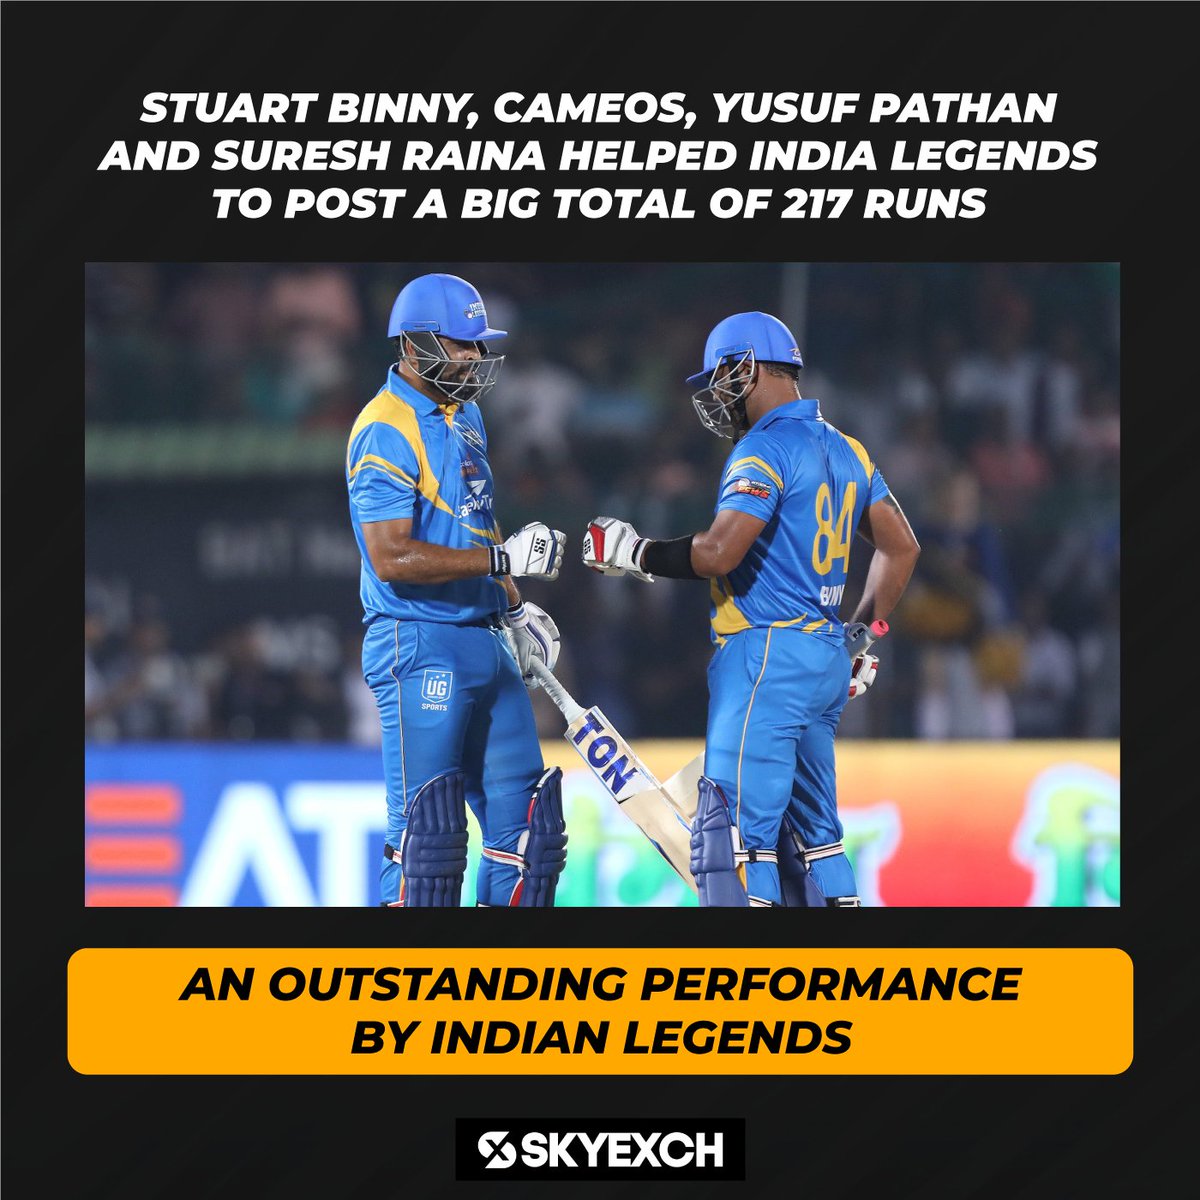 Yusuf Pathan and Suresh Raina helped India legend to score 217 runs.

#LegendsLeagueCricket #BossLogoKaGame #BhilwaraGroup #SkyExchCricket #SkyExchSport #T20Cricket #SachinTendulkar #SouthAfricaLegends #IndiaLegends #skyexch #RoadSafetyWorldSeries